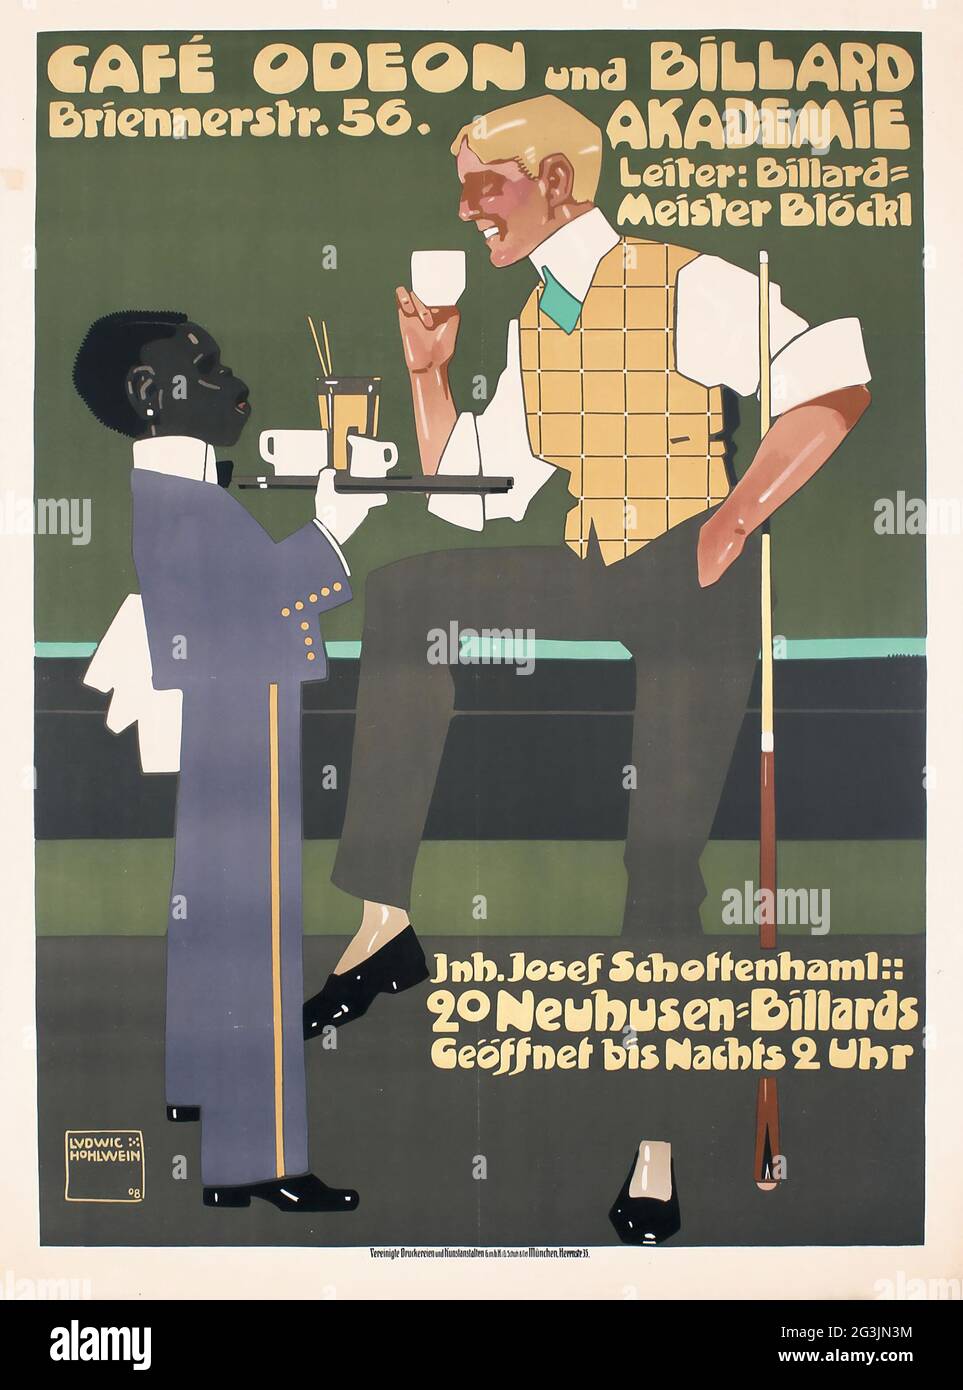 Vintage poster, German artist Ludwig Hohlwein (1874-1949) Café Odeon und billard akademie, 1908 Stock Photo